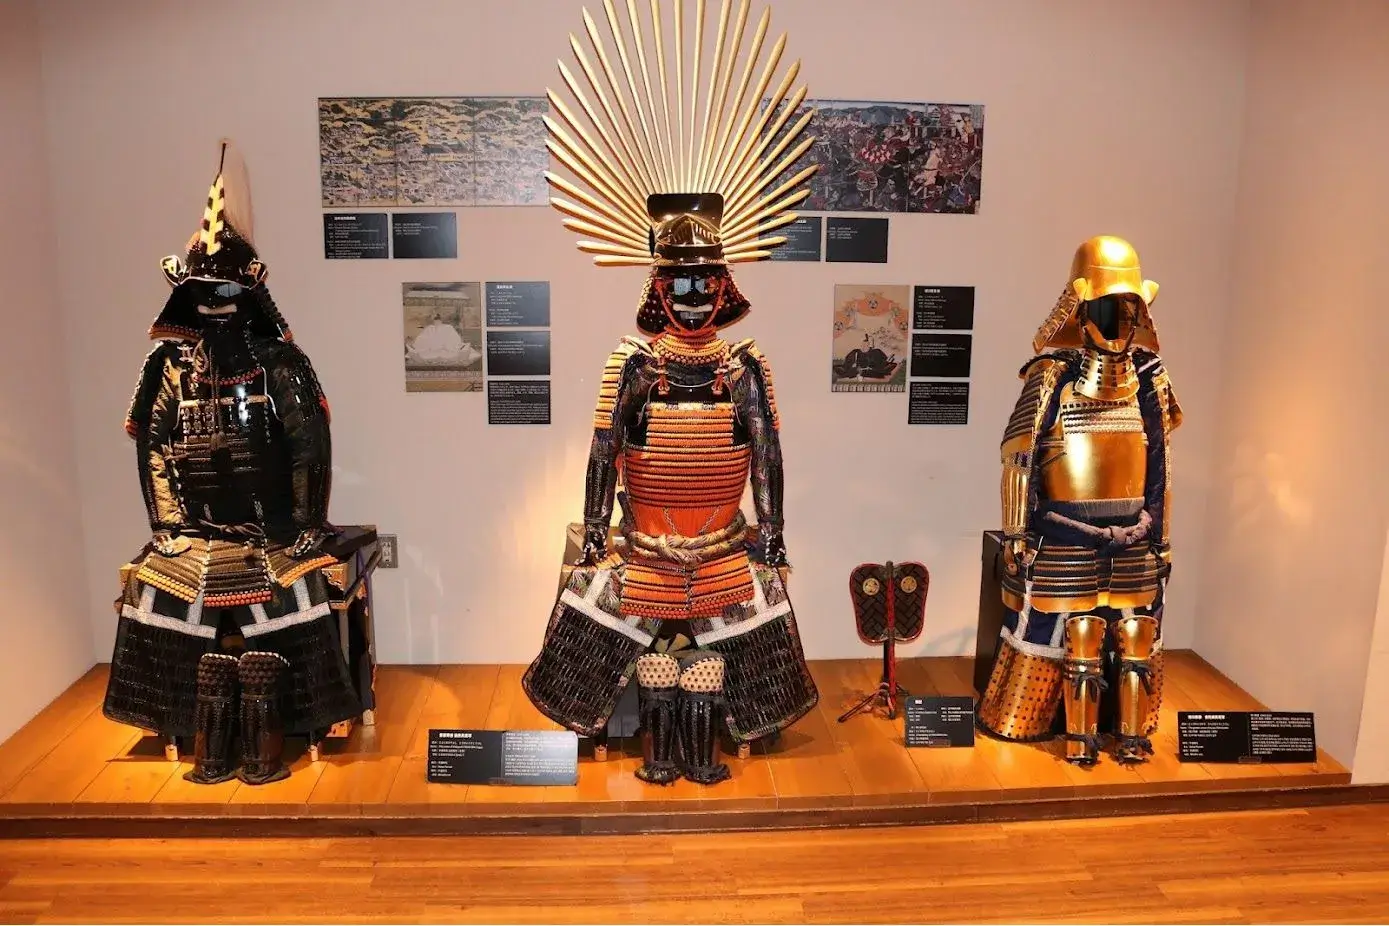 Samurai Museum